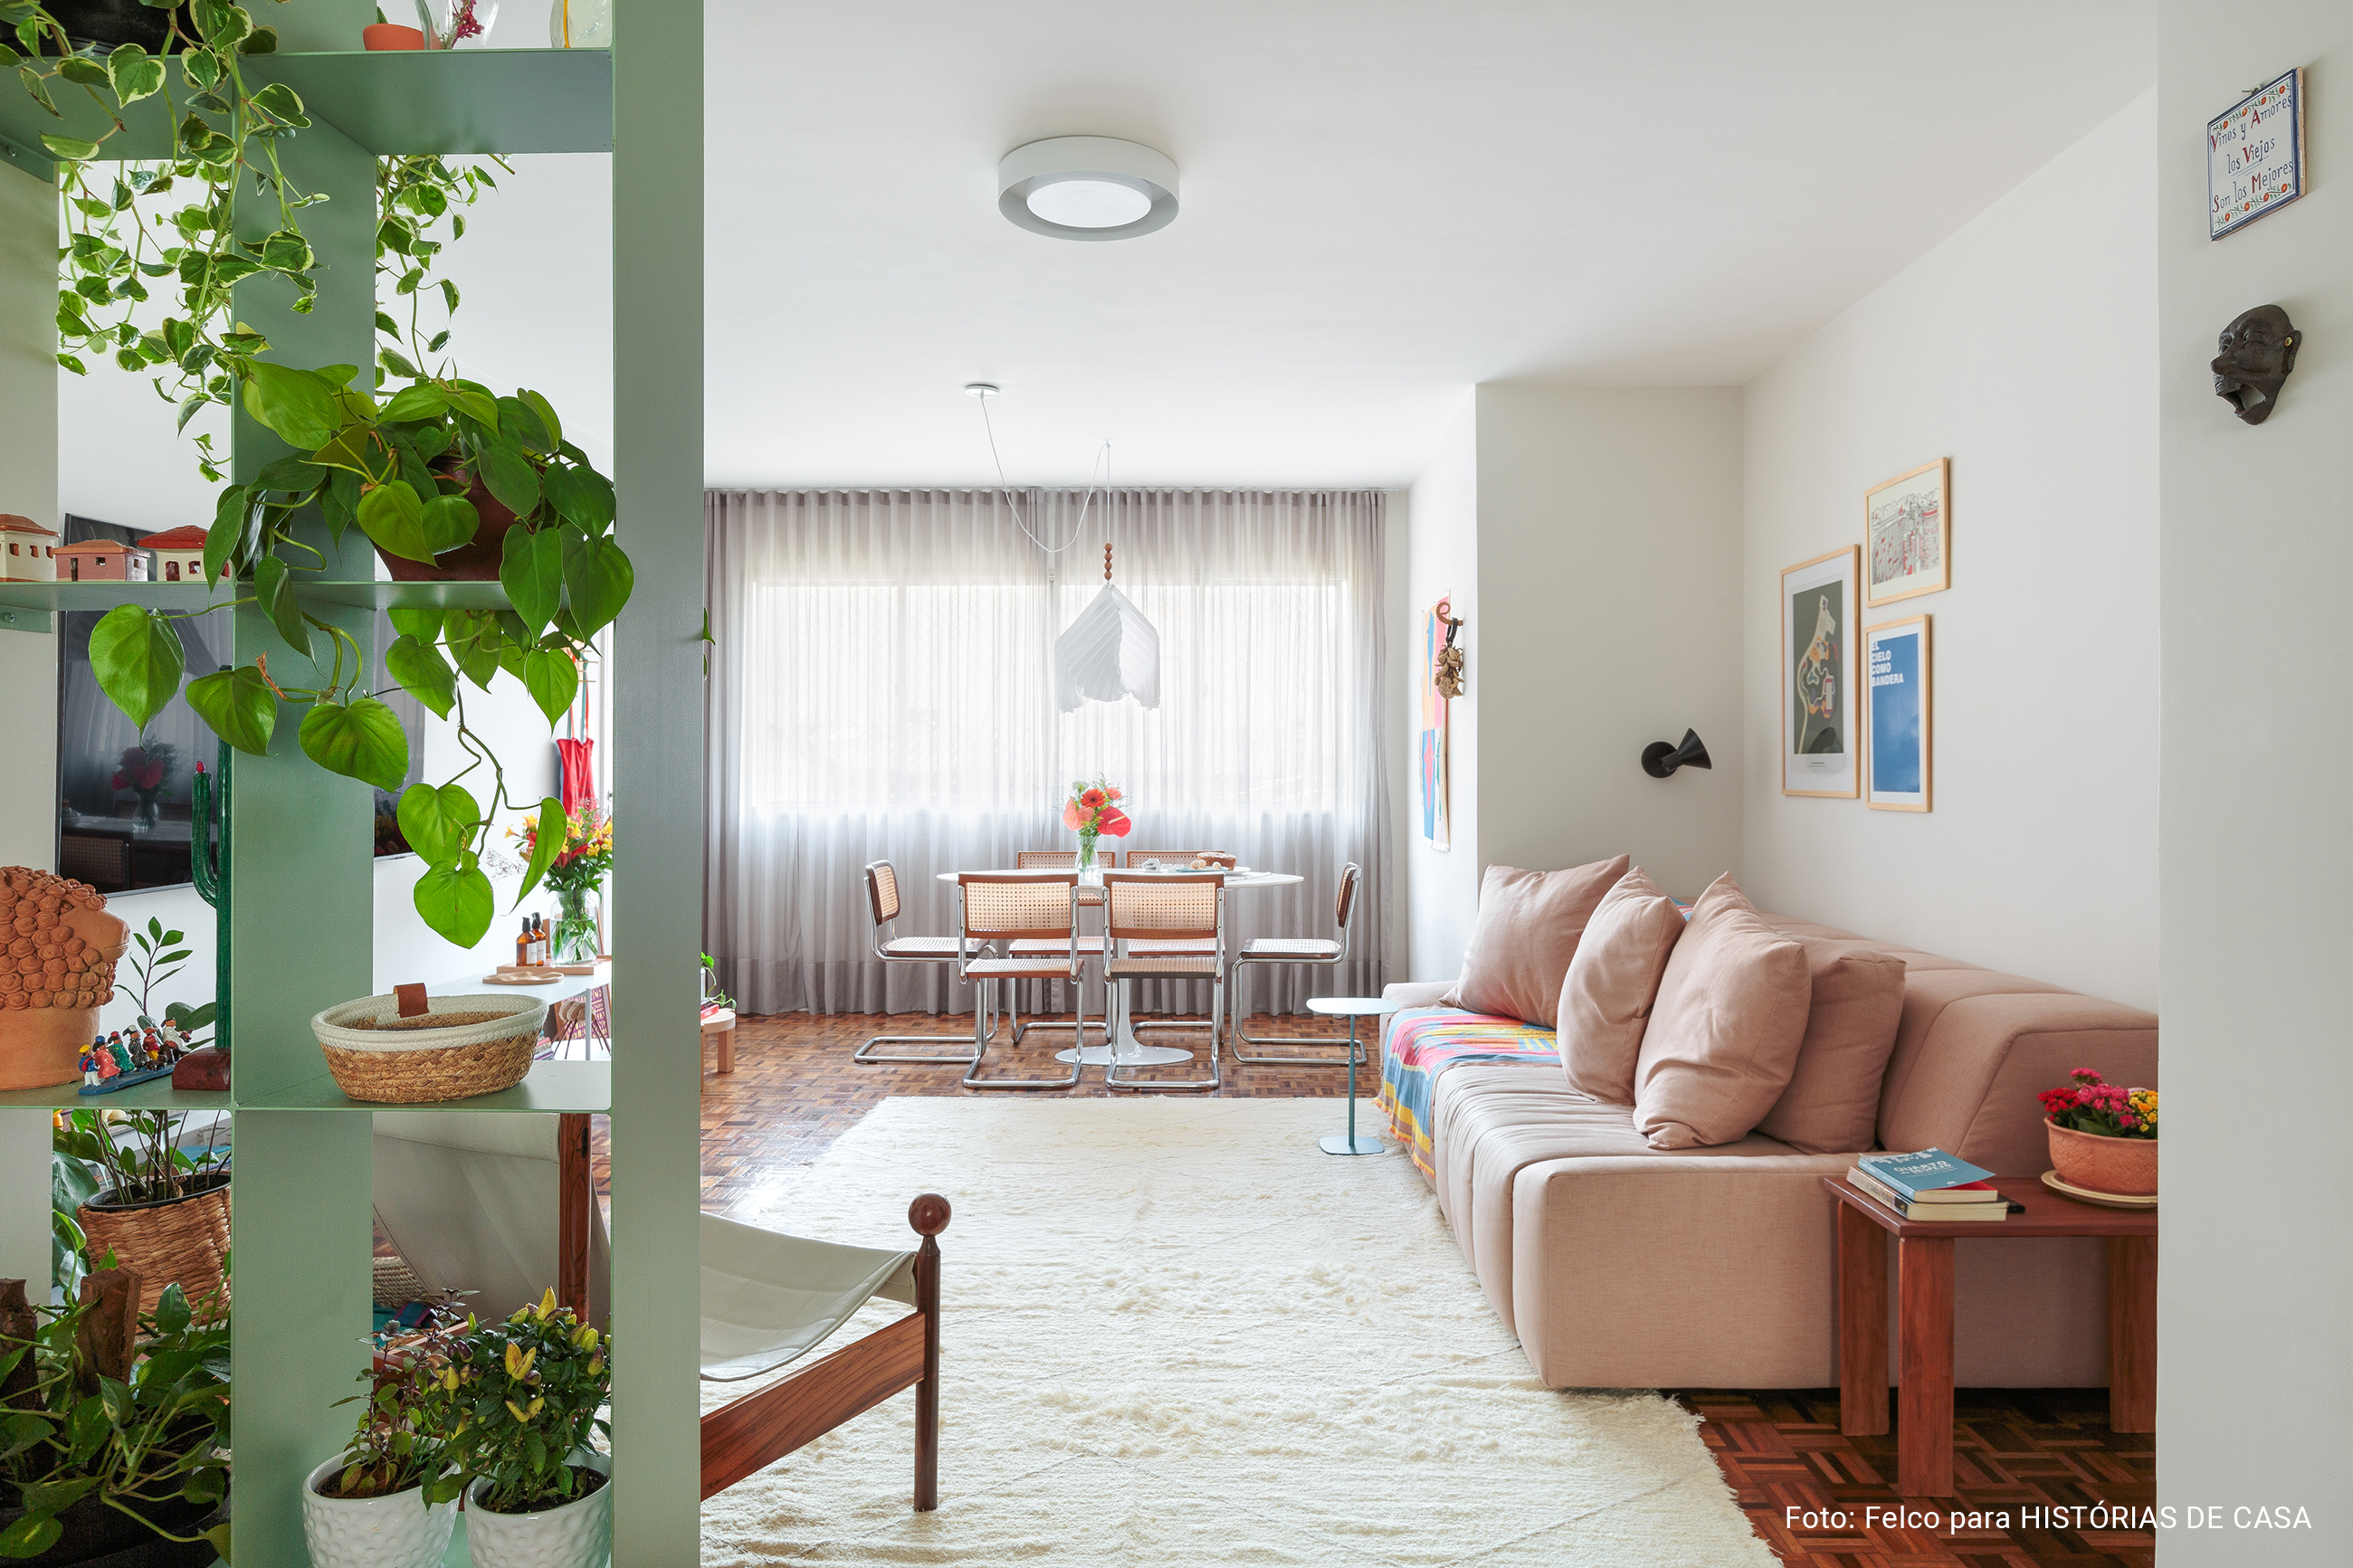 Apartamento alugado colorido com chão de taco e plantas.